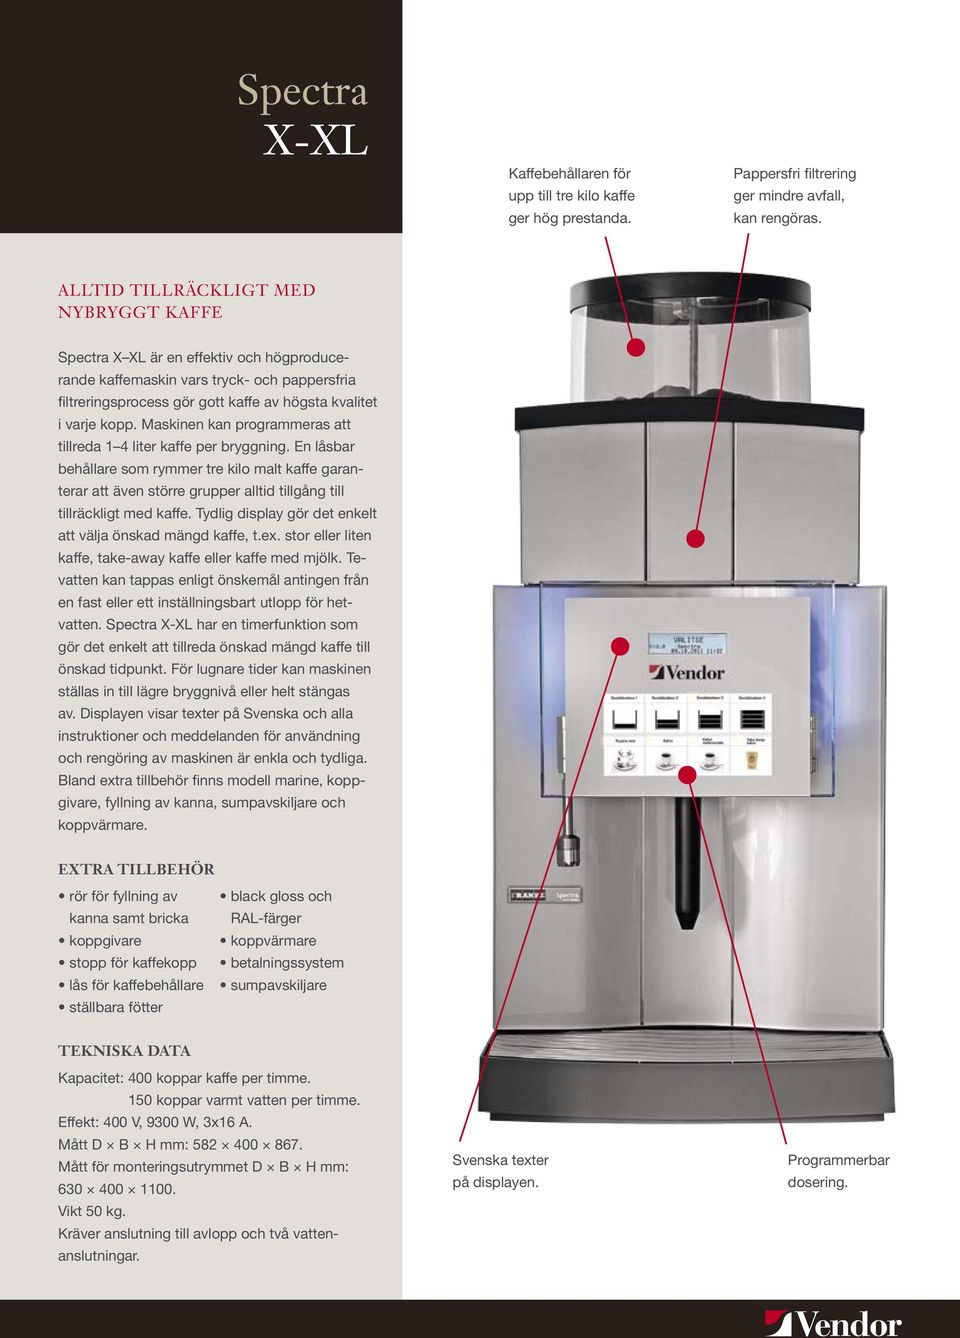 Maskinen kan programmeras att tillreda 1 4 liter kaffe per bryggning. En låsbar behållare som rymmer tre kilo malt kaffe garanterar att även större grupper alltid tillgång till tillräckligt med kaffe.